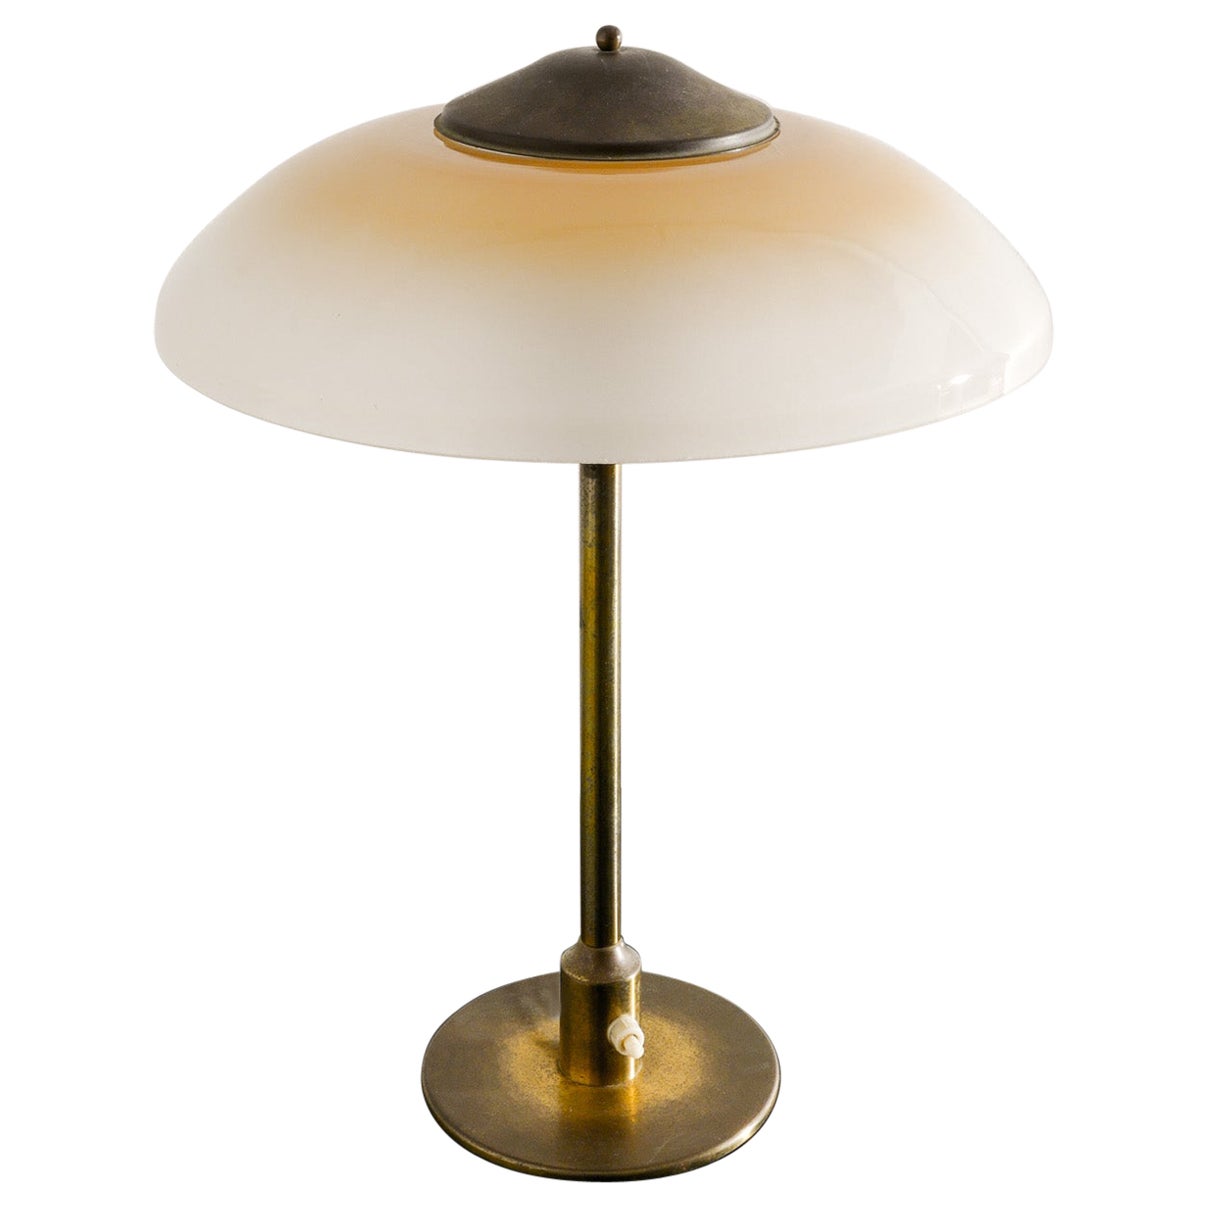 Danish Mid Century Table Desk Lamp in Brass & Glass by Fog & Mørup Denmark 1950s For Sale